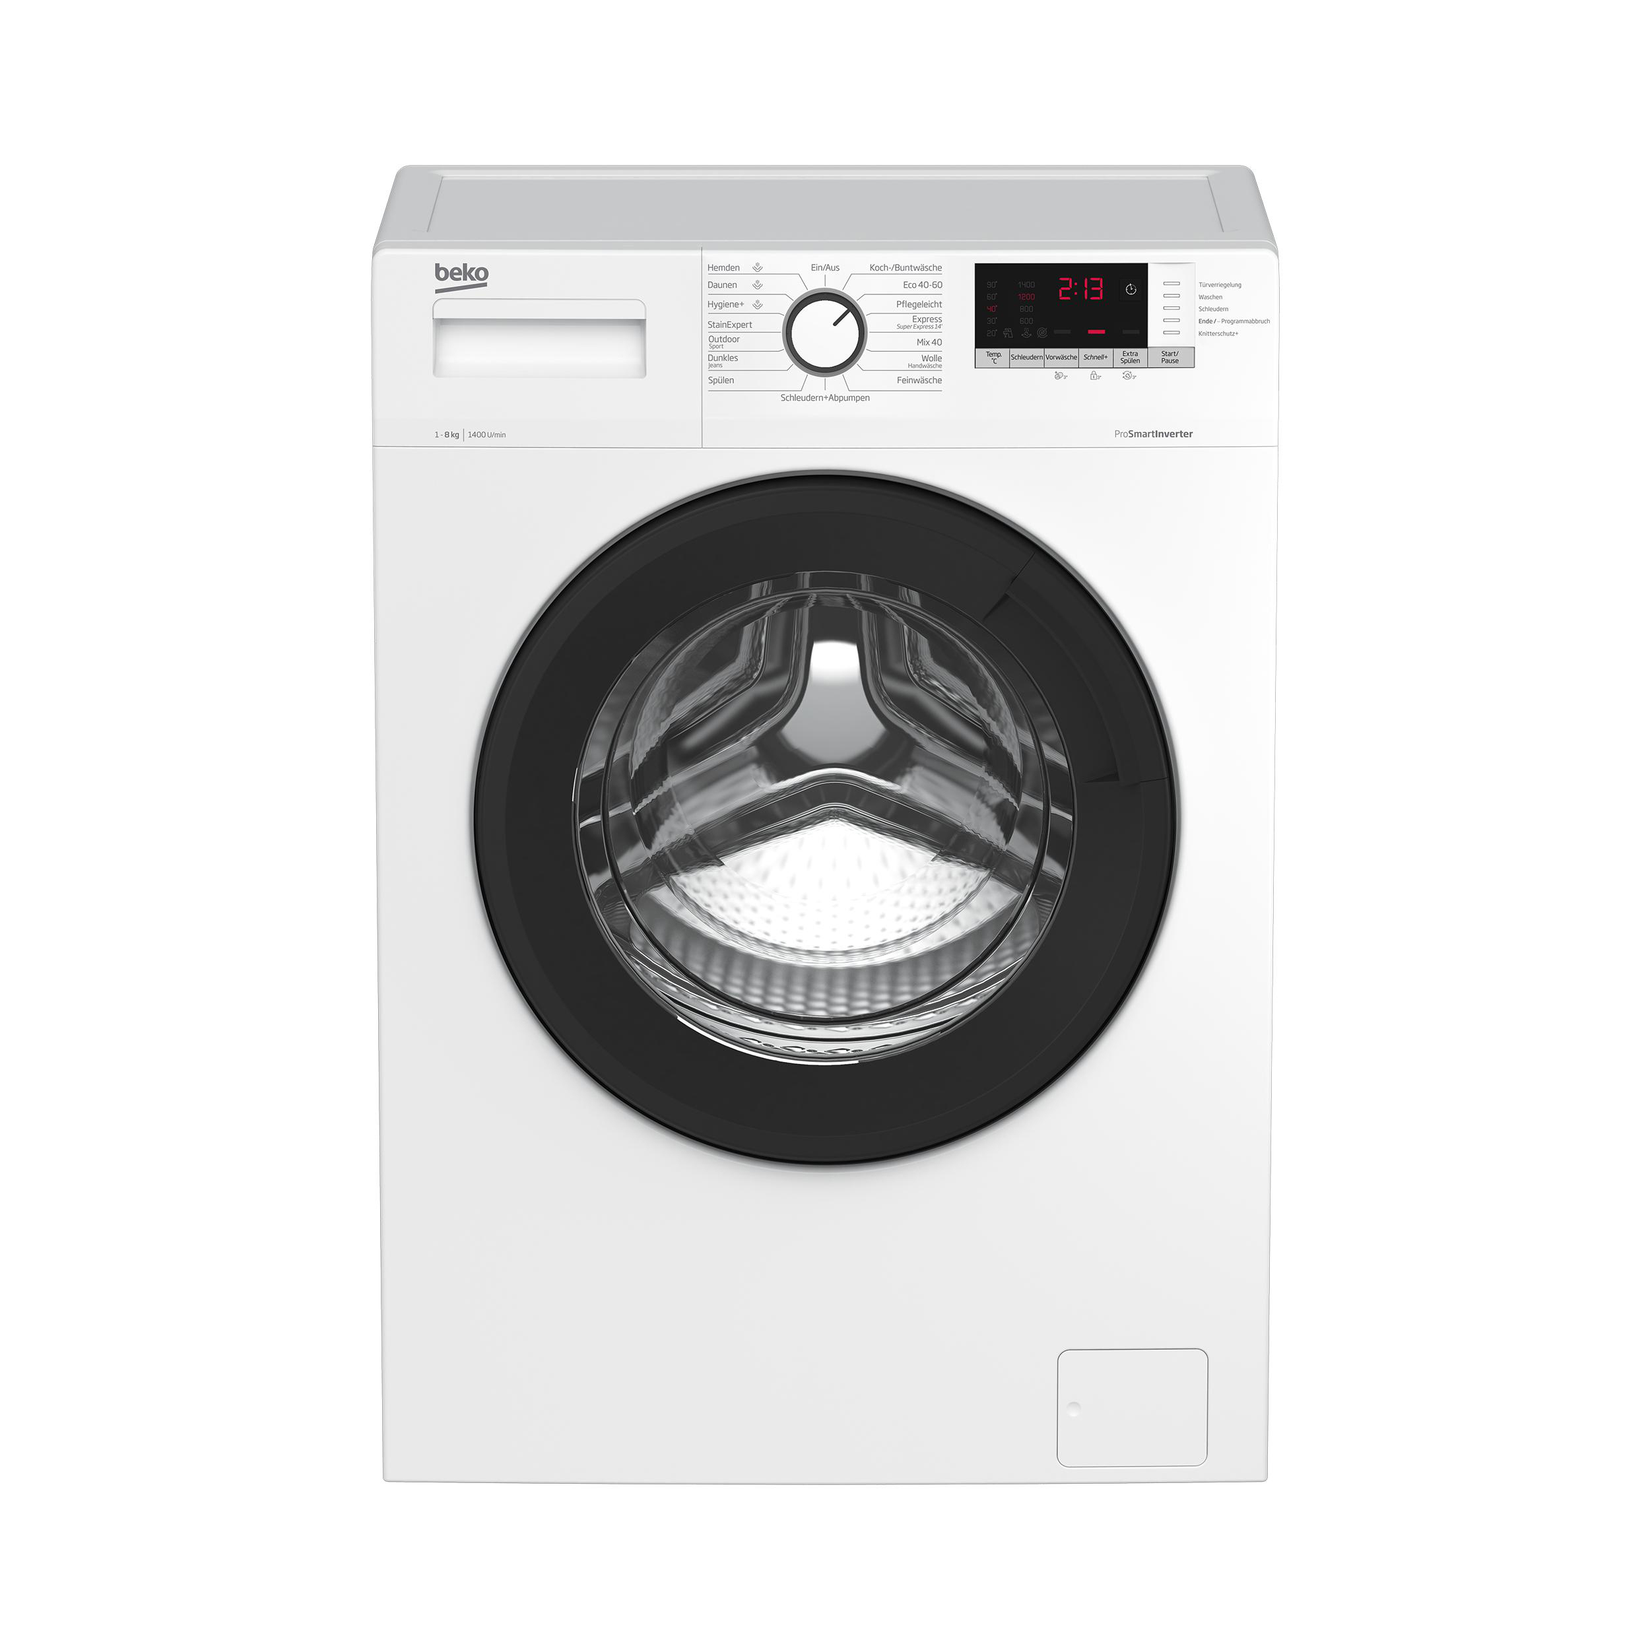 BEKO WLM81434NPSA Waschmaschine (8 kg, 1400 U/Min., A) für 399€ in Media Markt